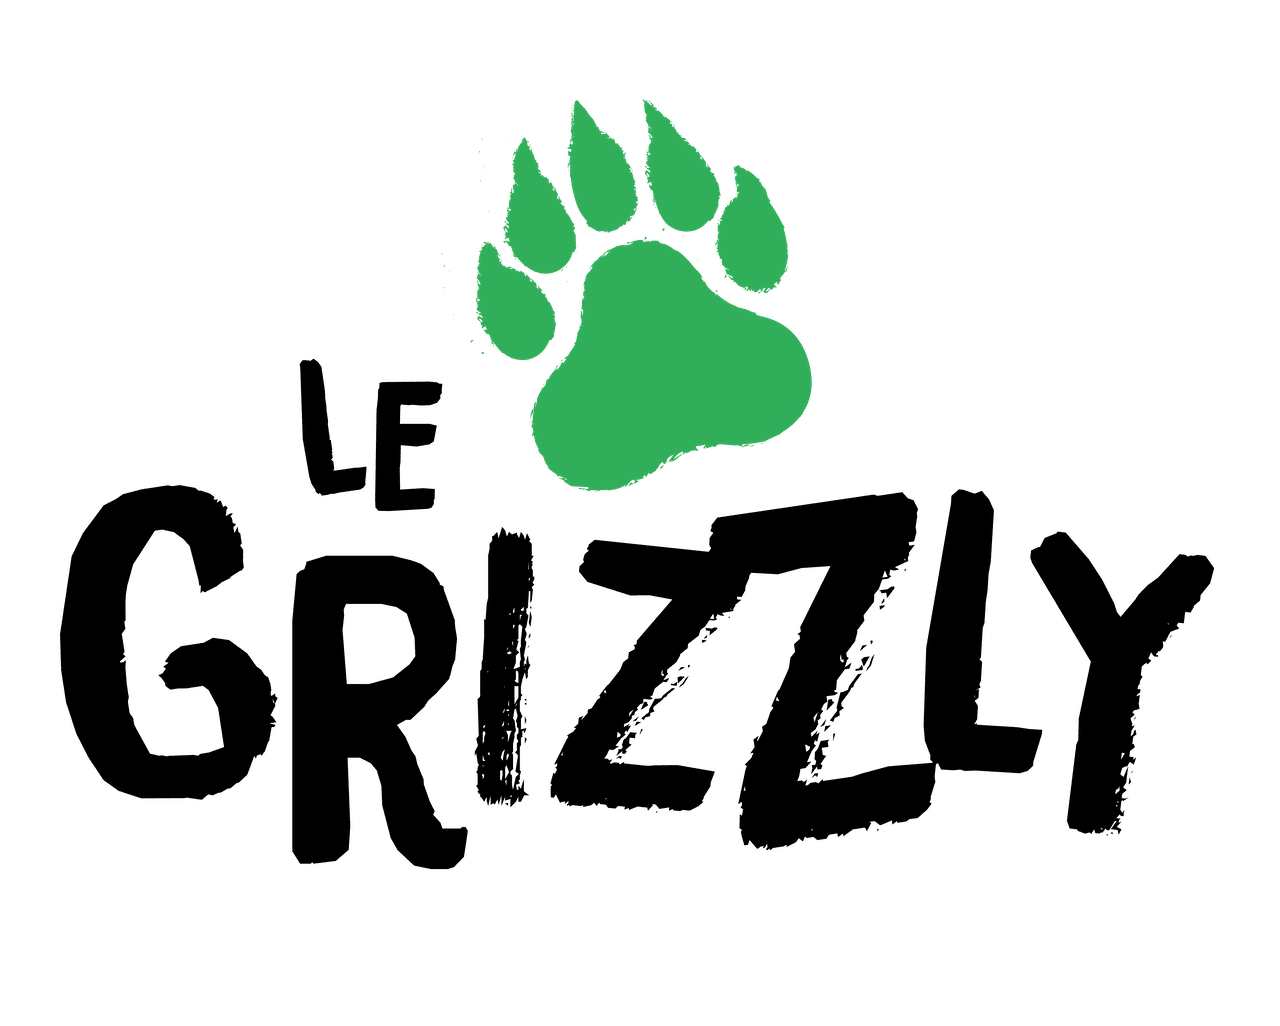 Logo LE GRIZZLY avec une patte d'ours verte